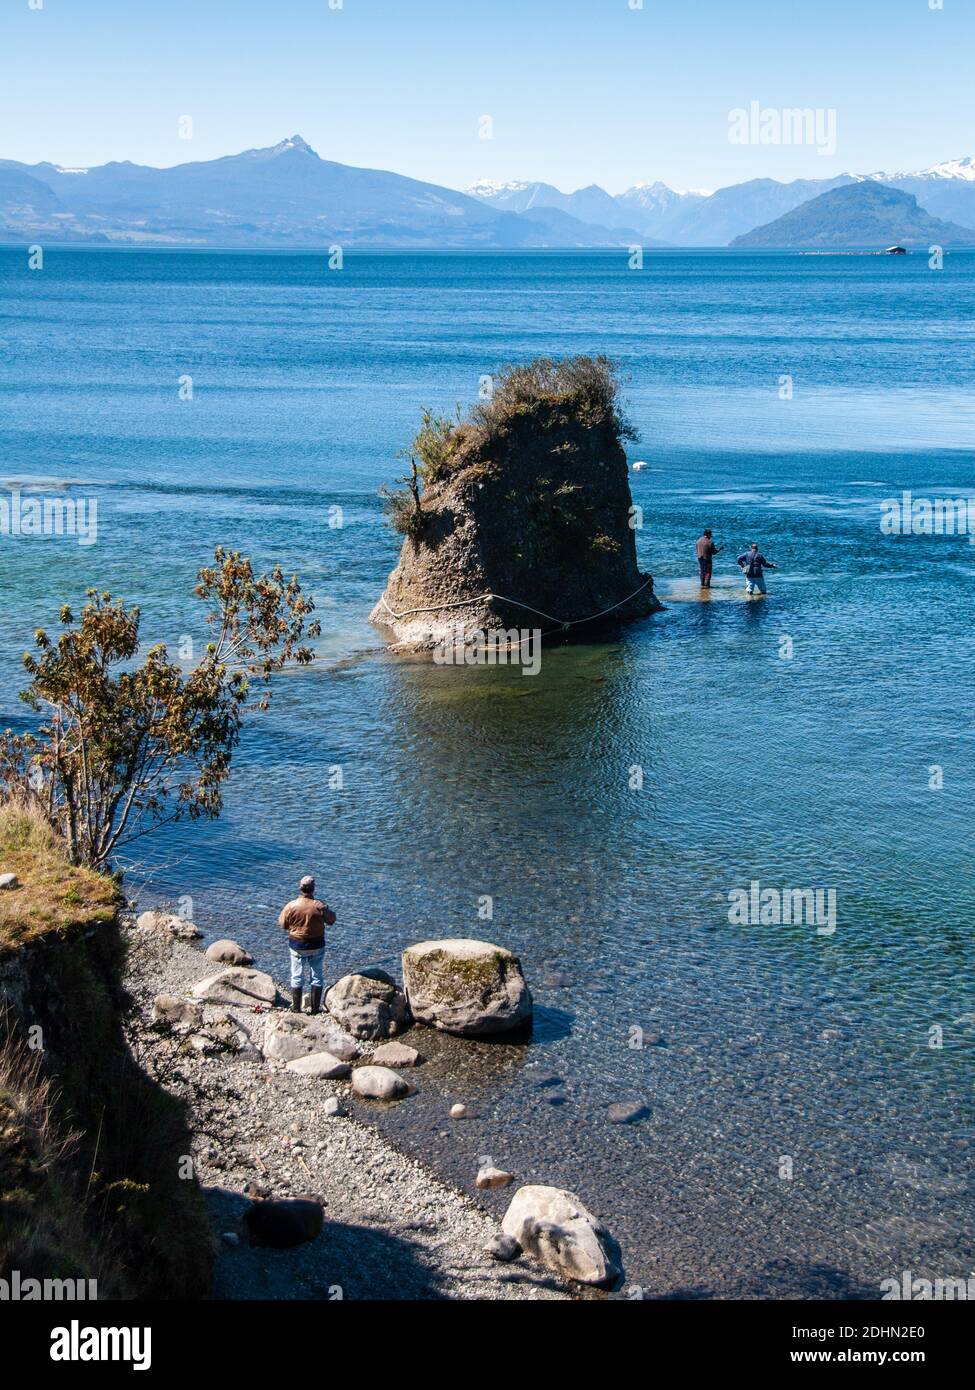 Osorno, Cile - 27 settembre 2009: Due uomini stanno pescando nel lago Rupanco, con le montagne vulcaniche delle Ande Patagoni alle spalle. Foto Stock